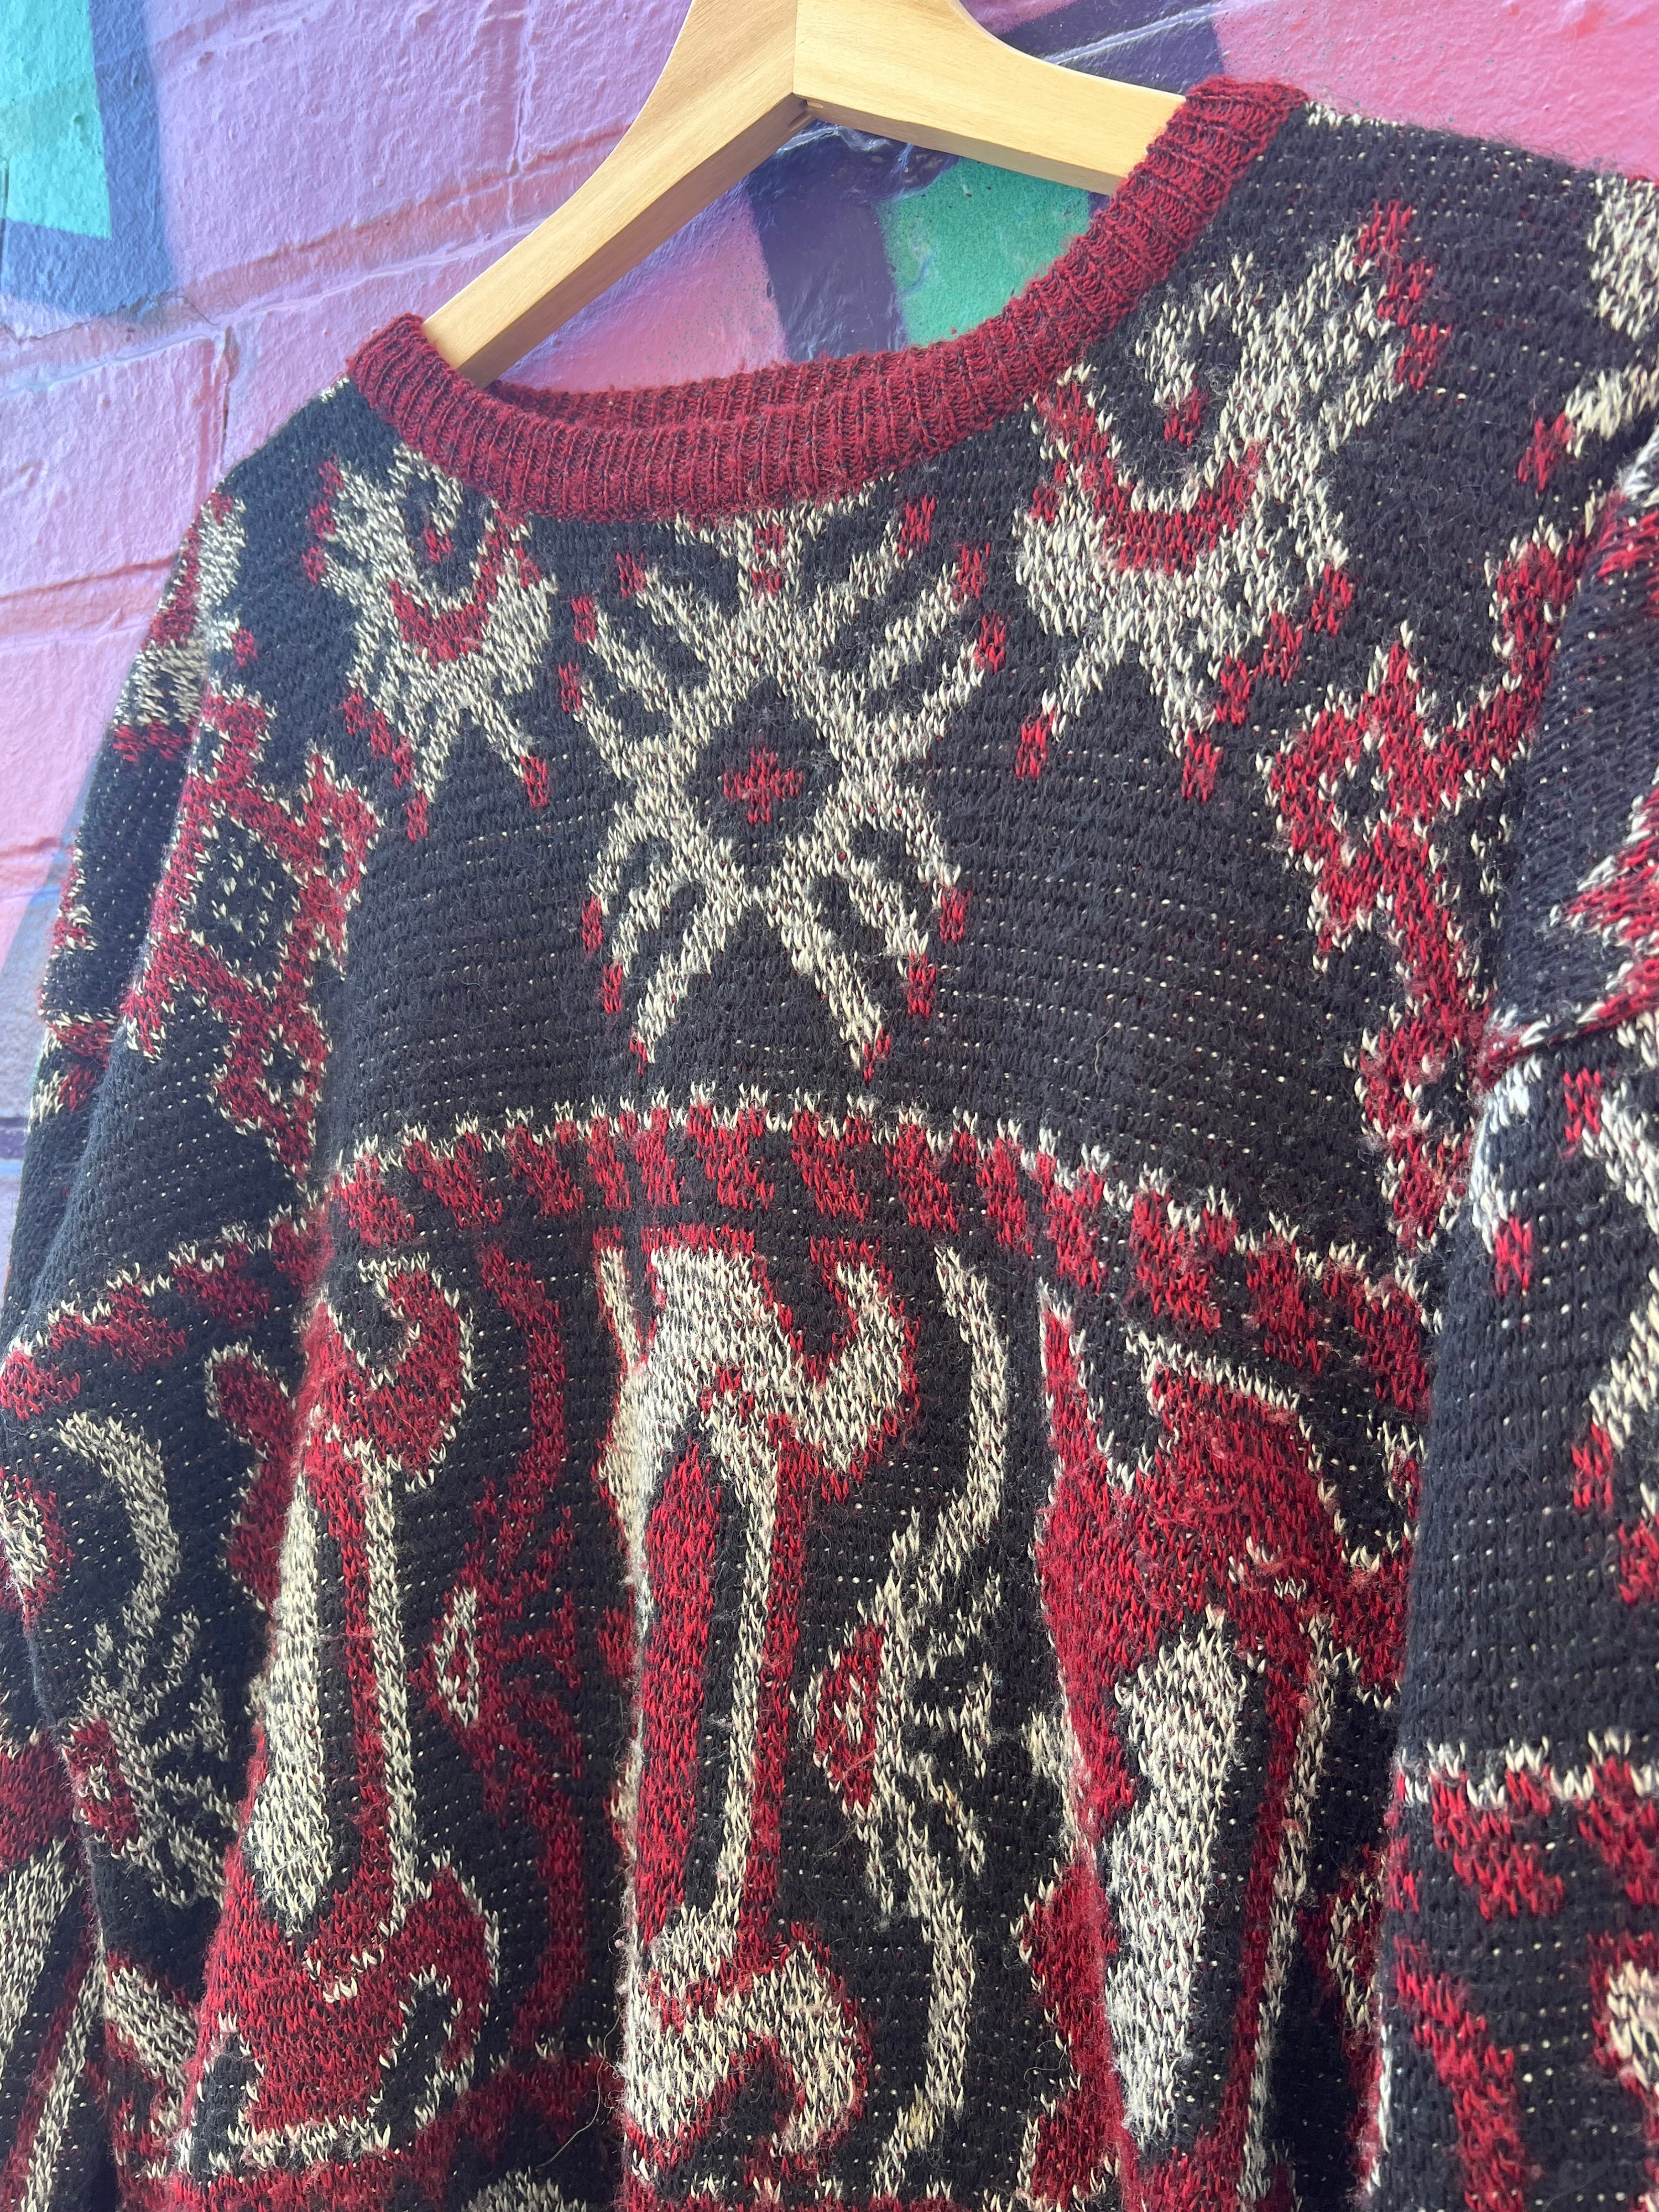 M - Vintage Boydex Knitted Jumper